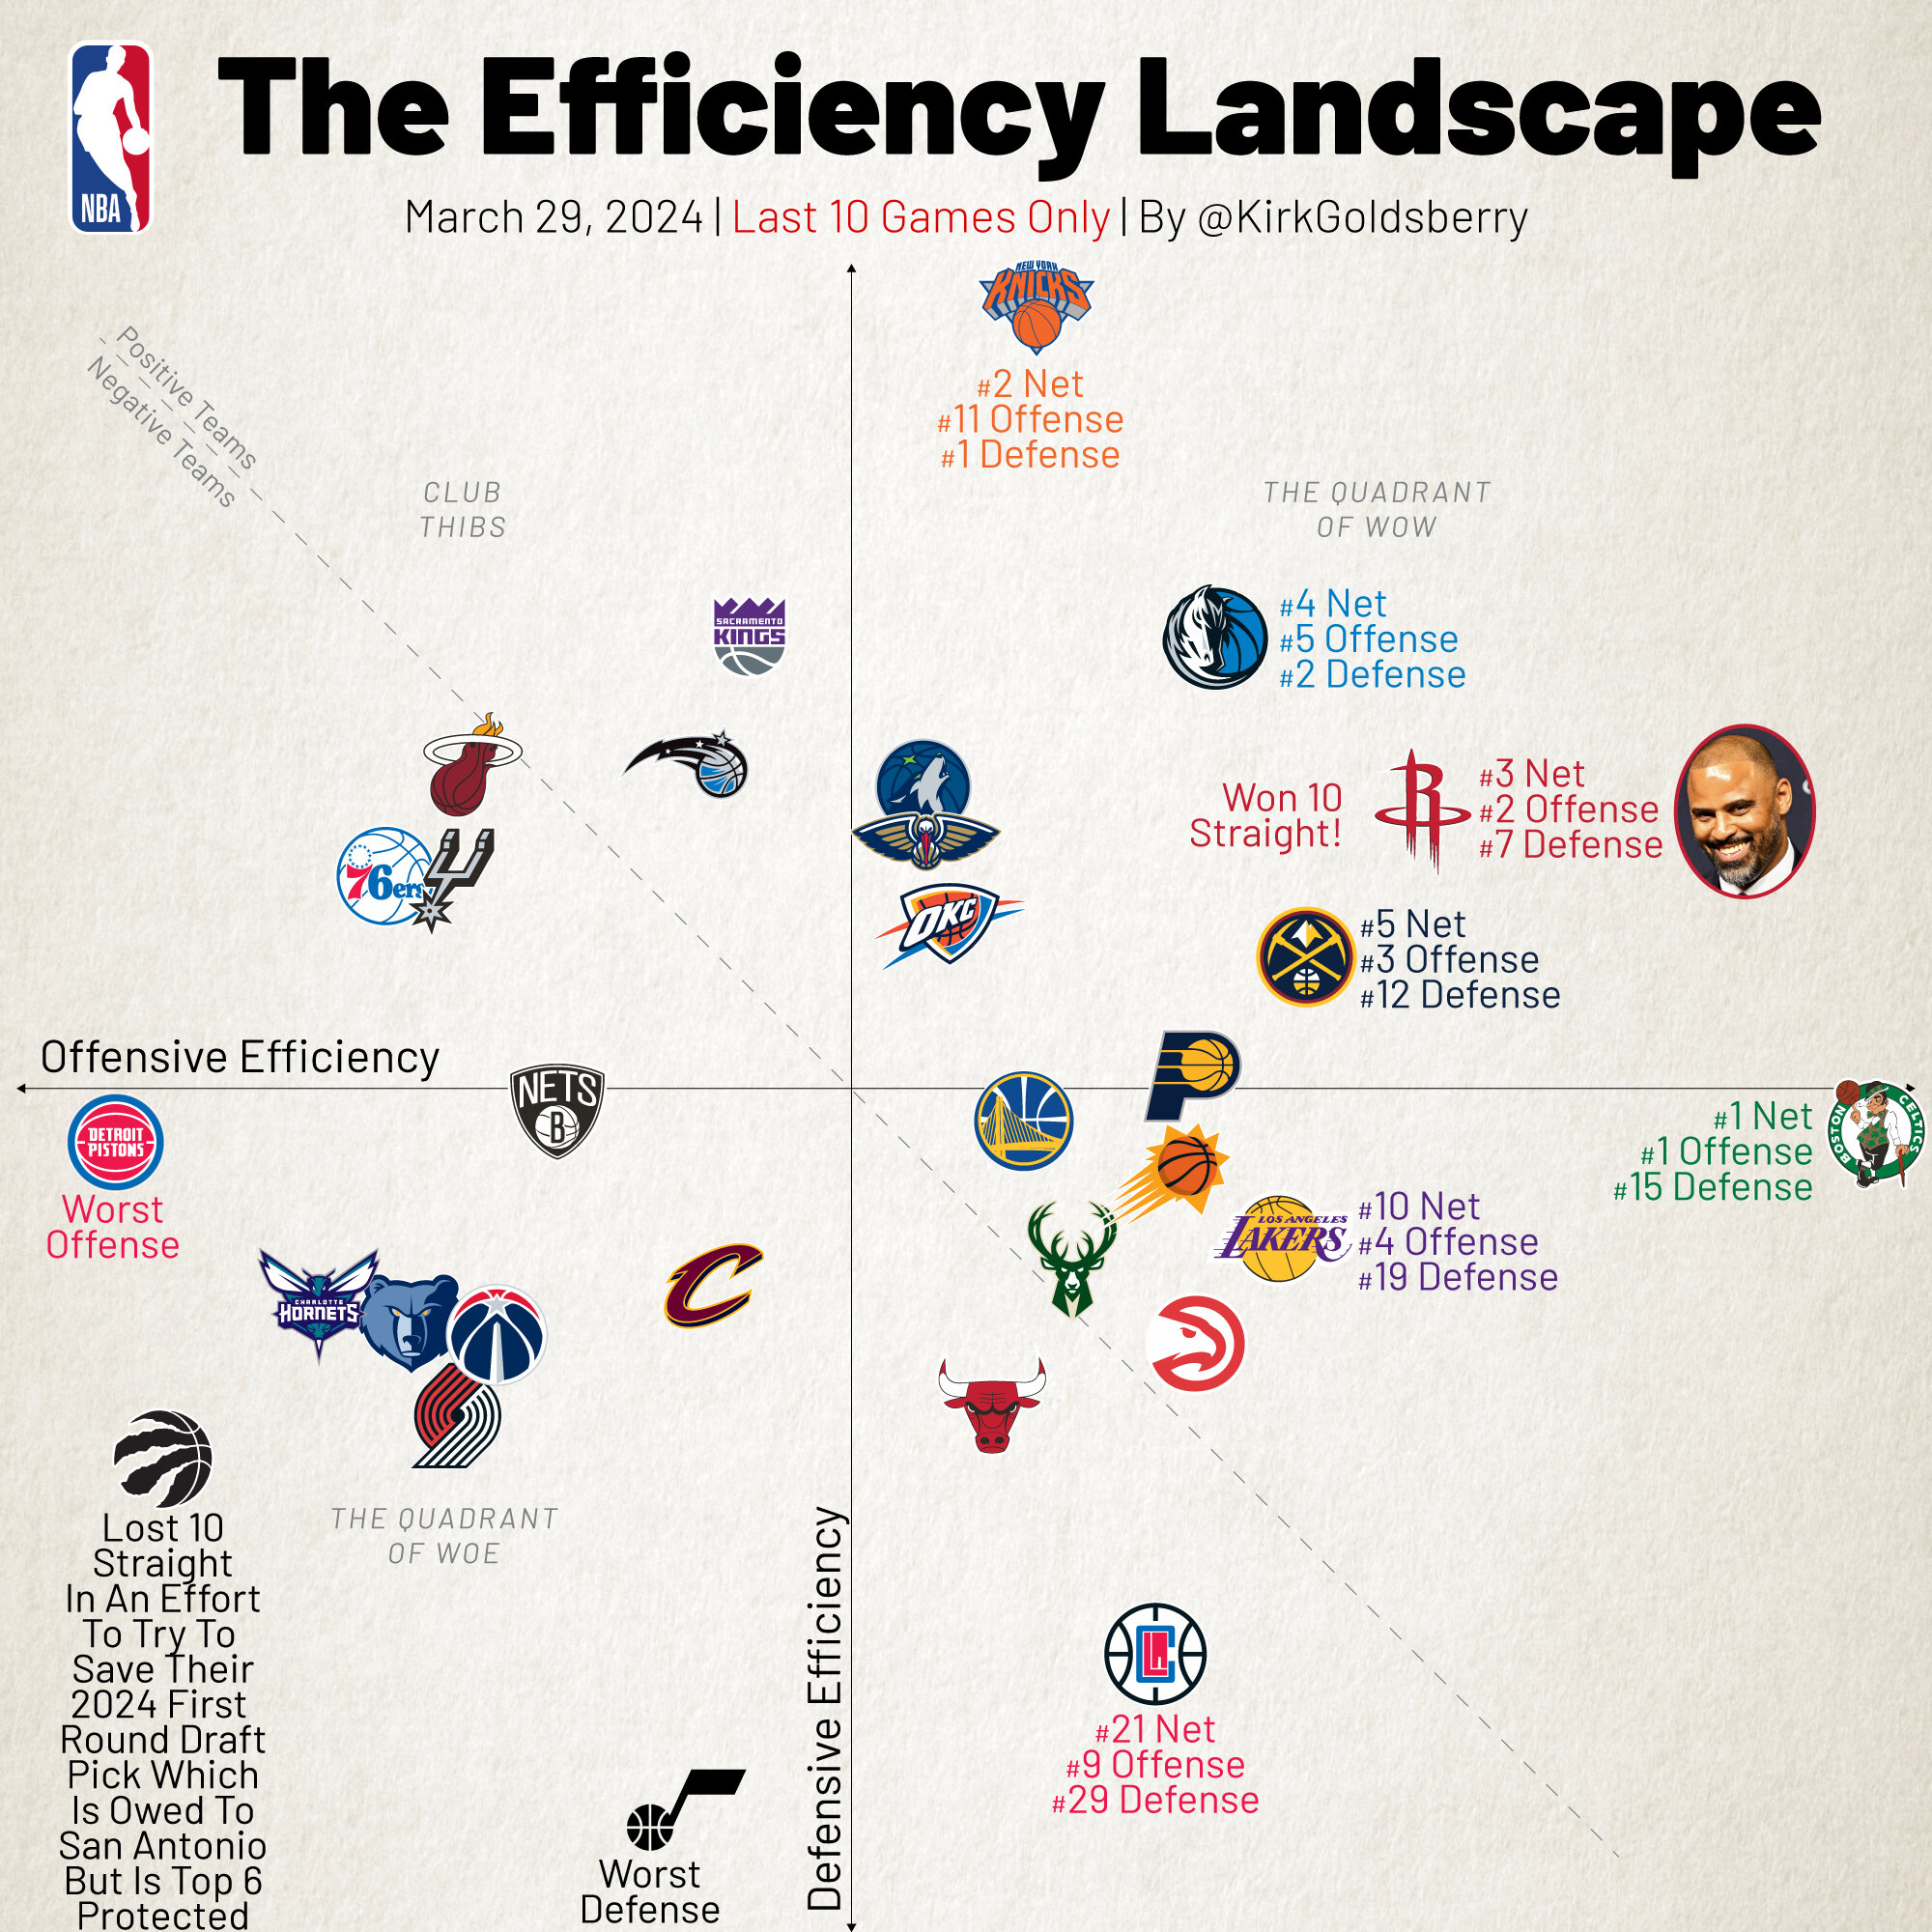 Баскетбольный аналитик Кирк Голдсберри прокомментировал график эффективности команд за последние 10 игр